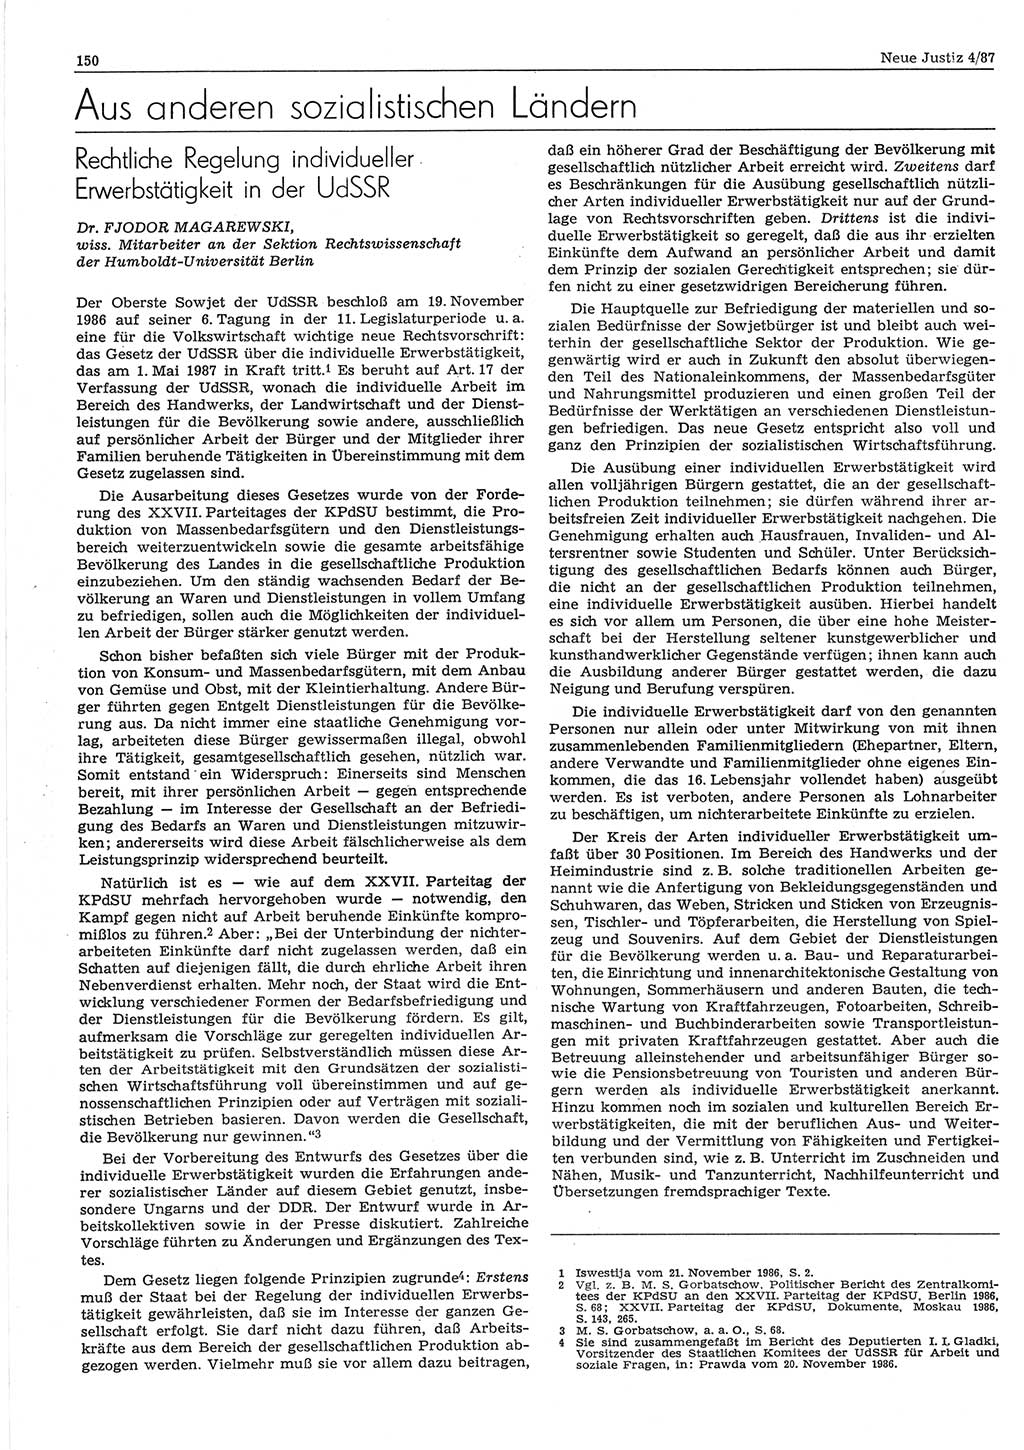 Neue Justiz (NJ), Zeitschrift für sozialistisches Recht und Gesetzlichkeit [Deutsche Demokratische Republik (DDR)], 41. Jahrgang 1987, Seite 150 (NJ DDR 1987, S. 150)